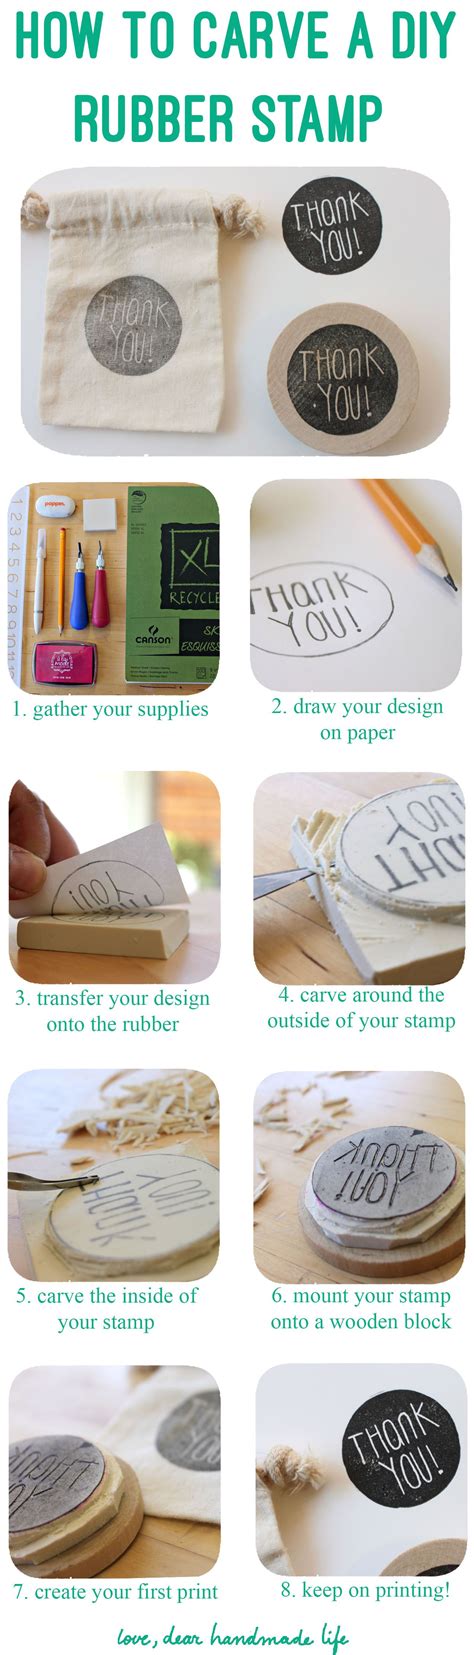 How To Make A Diy Carved Rubber Stamp Diy Stamp Stamp Crafts Diy